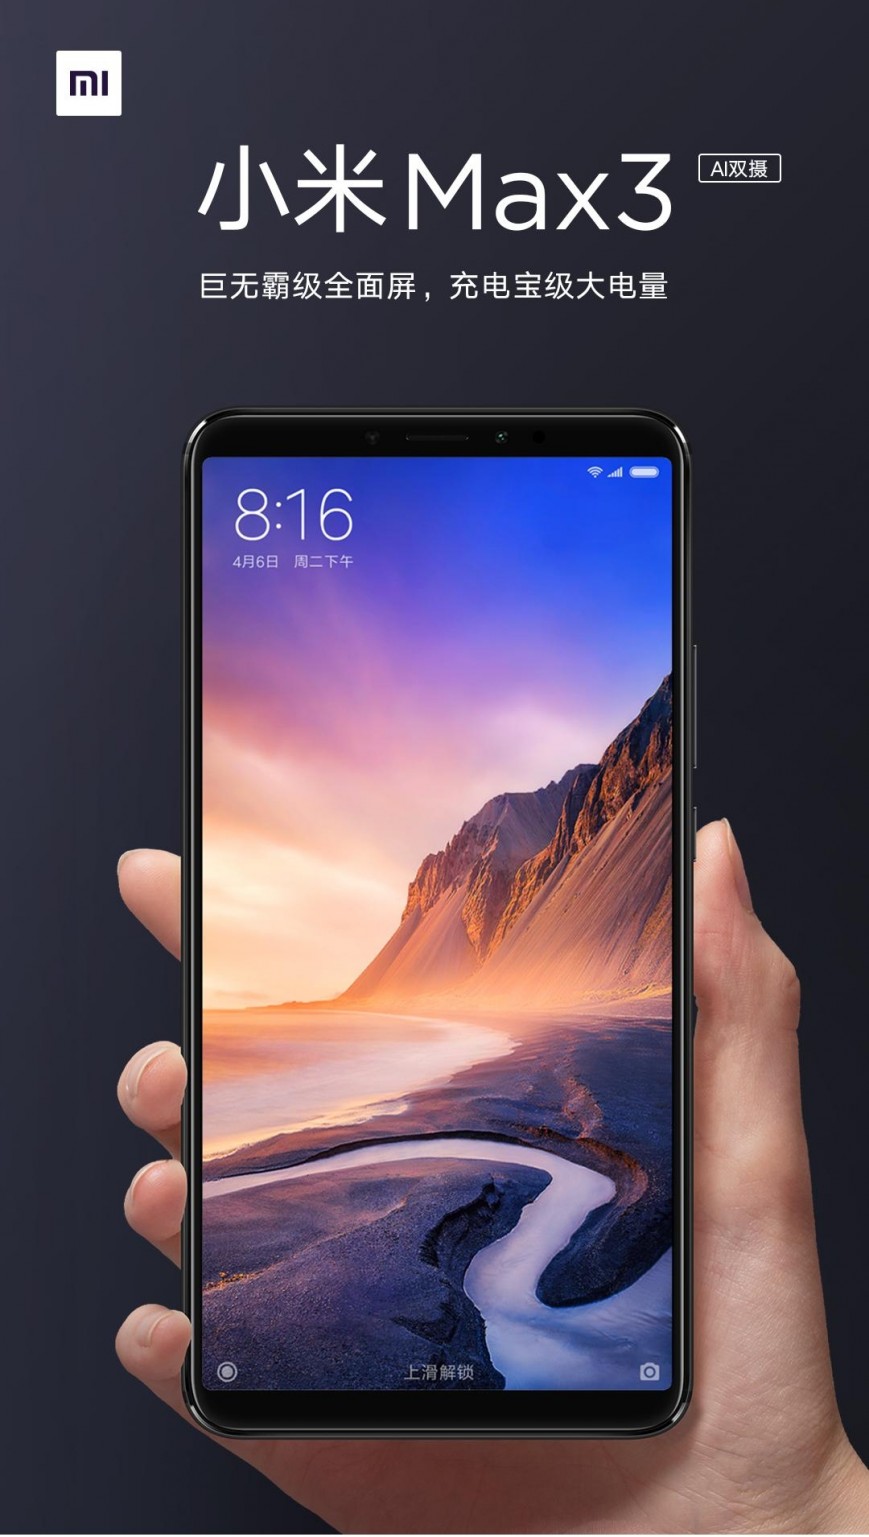 Огромный Xiaomi Mi Max 3 представлен официально